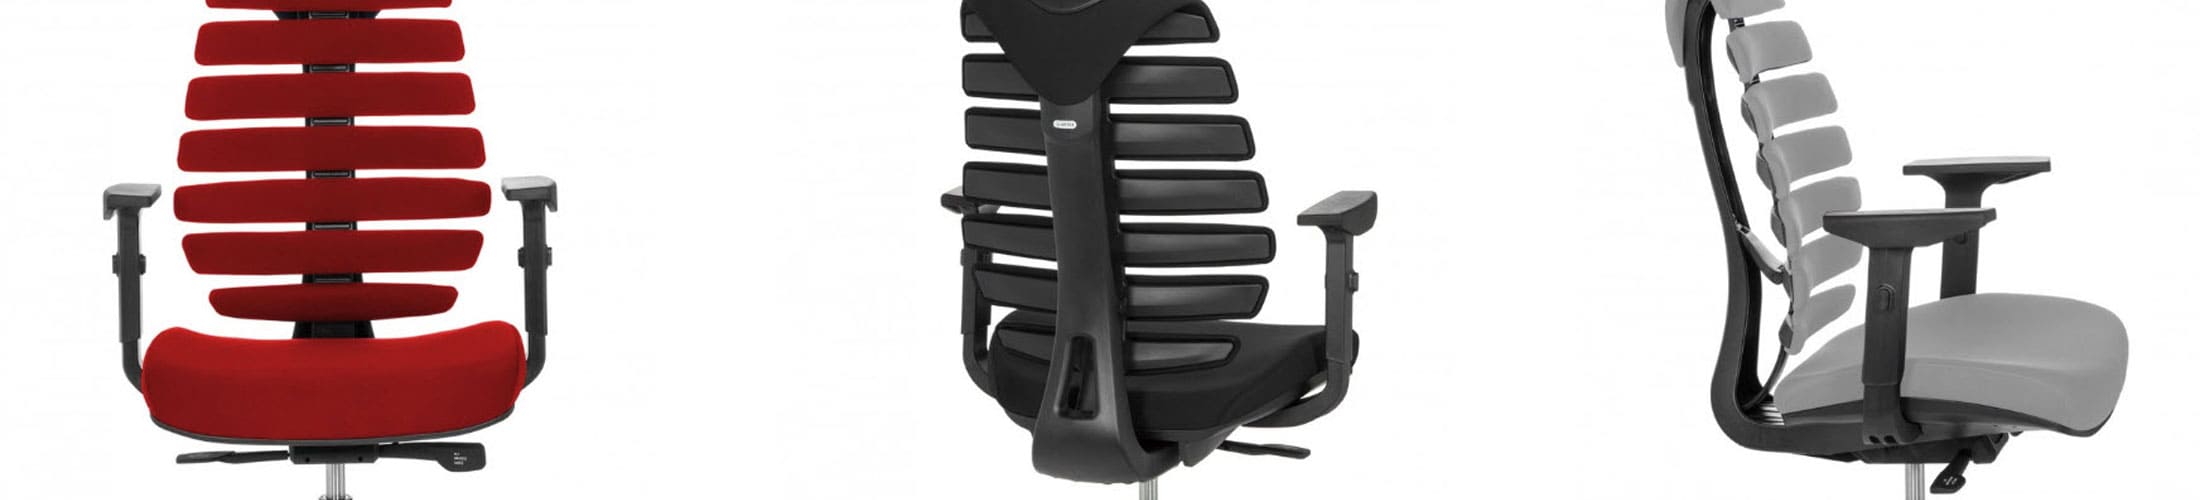 Cómo elegir una silla ergonómica: Características